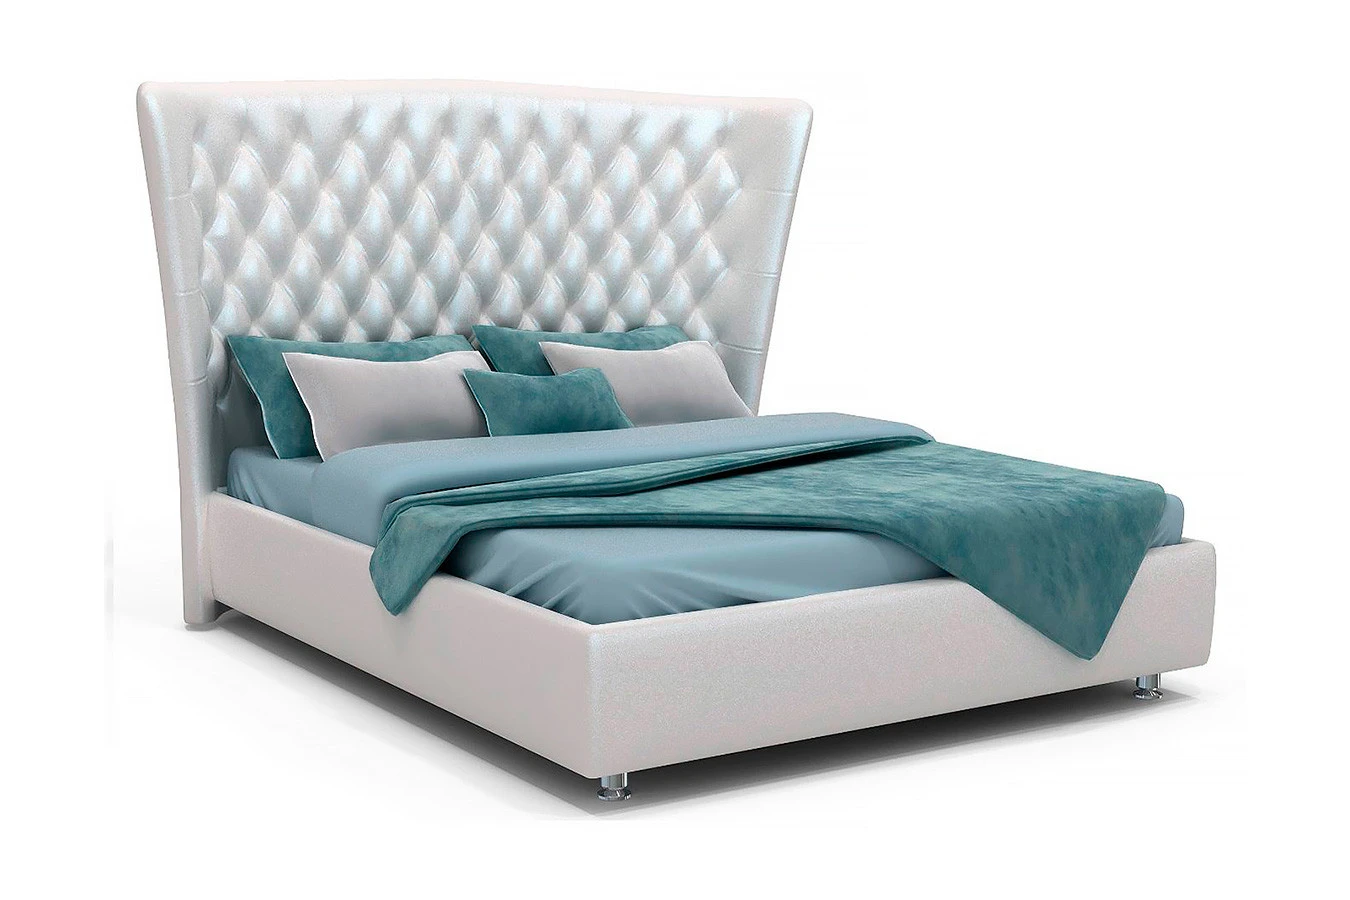 Мягкая кровать Sofia с высоким изголовьем Askona фото - 9 - большое изображение